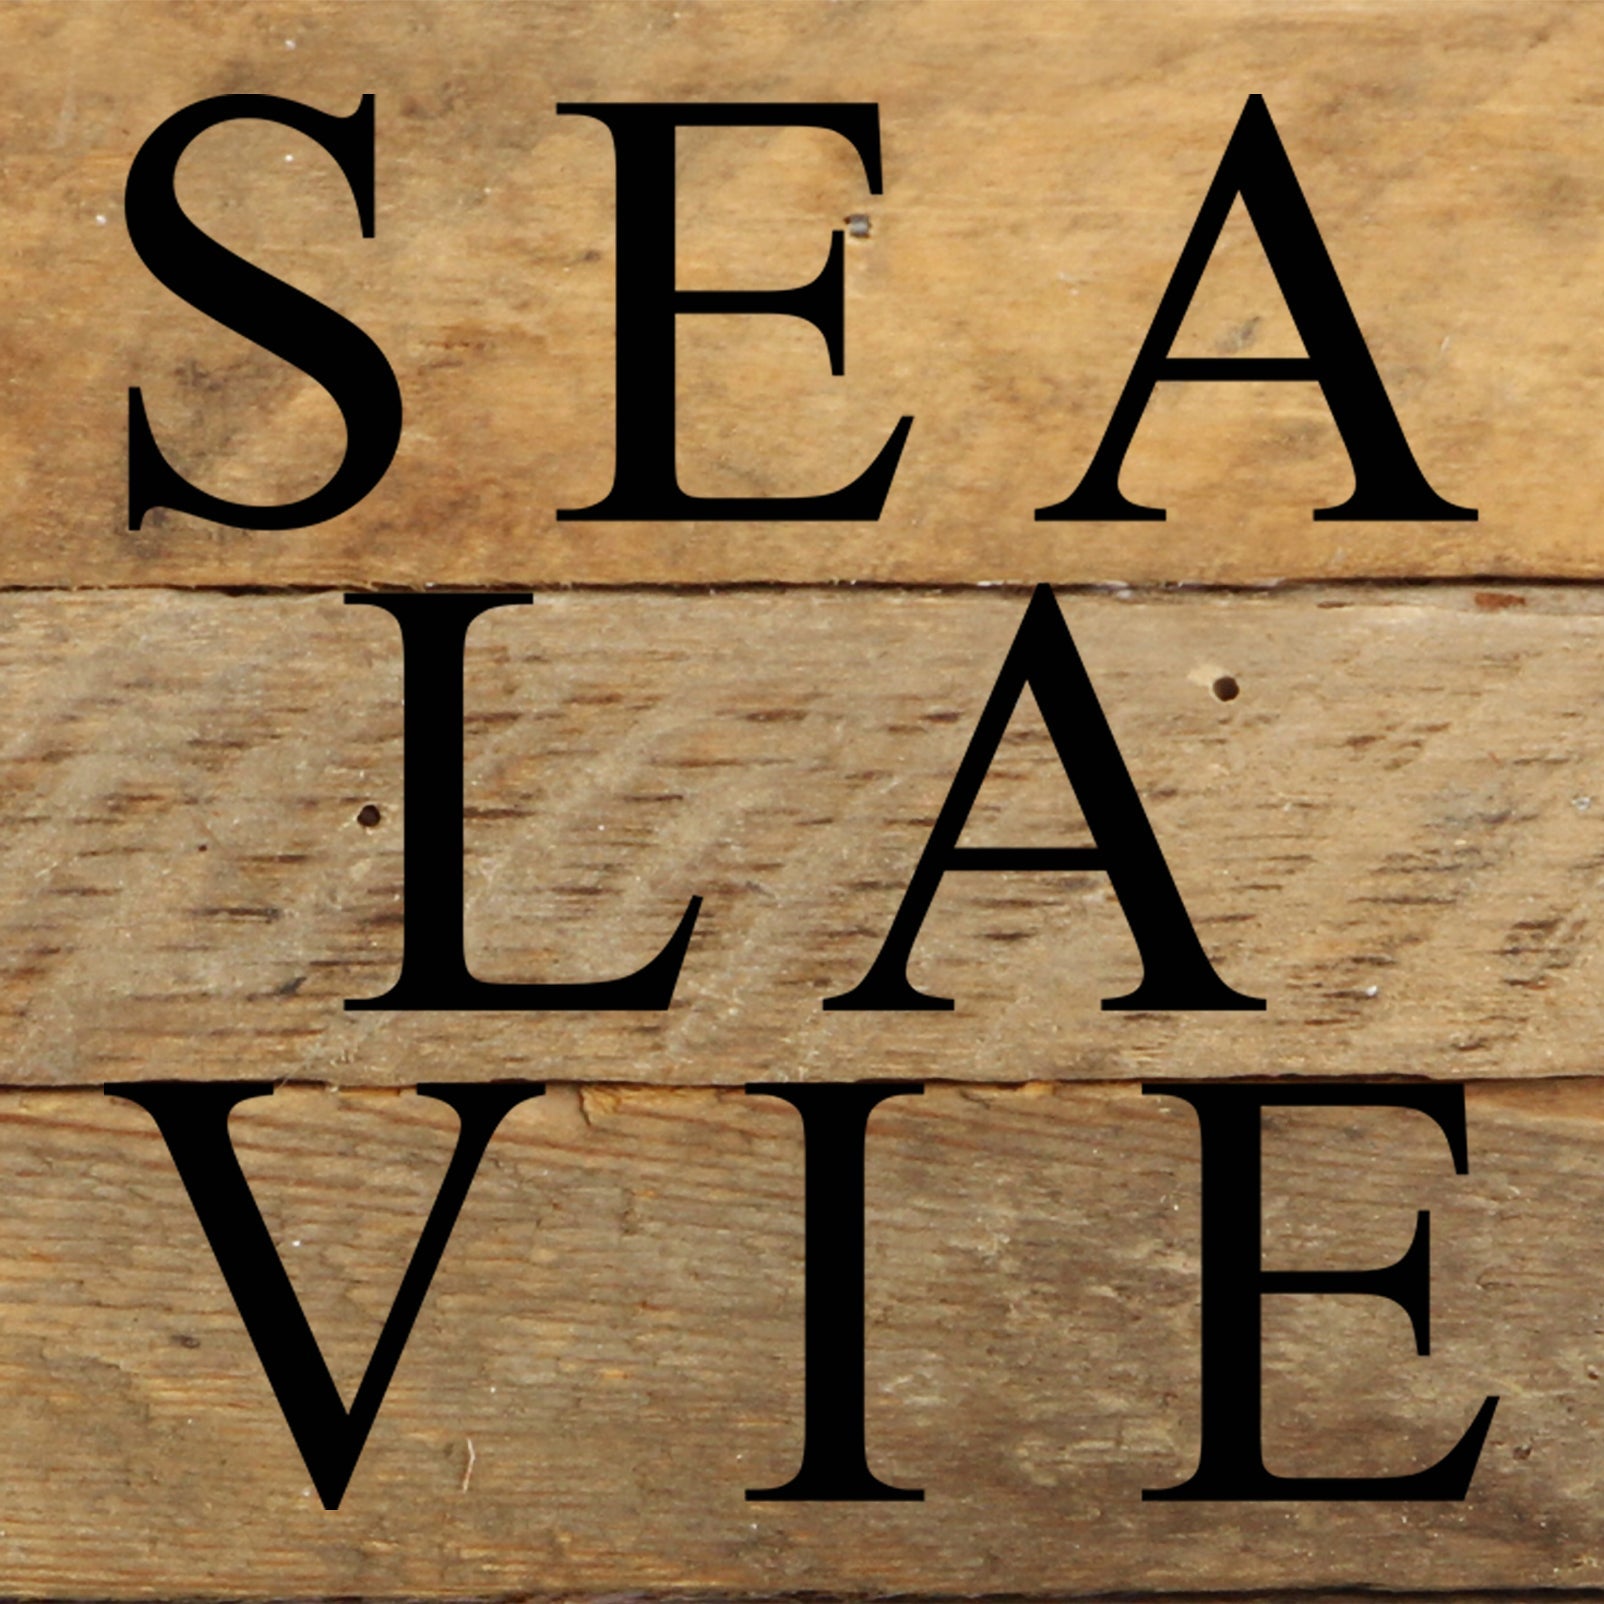 Sea la Vie / 6"x6" Reclaimed Wood Sign